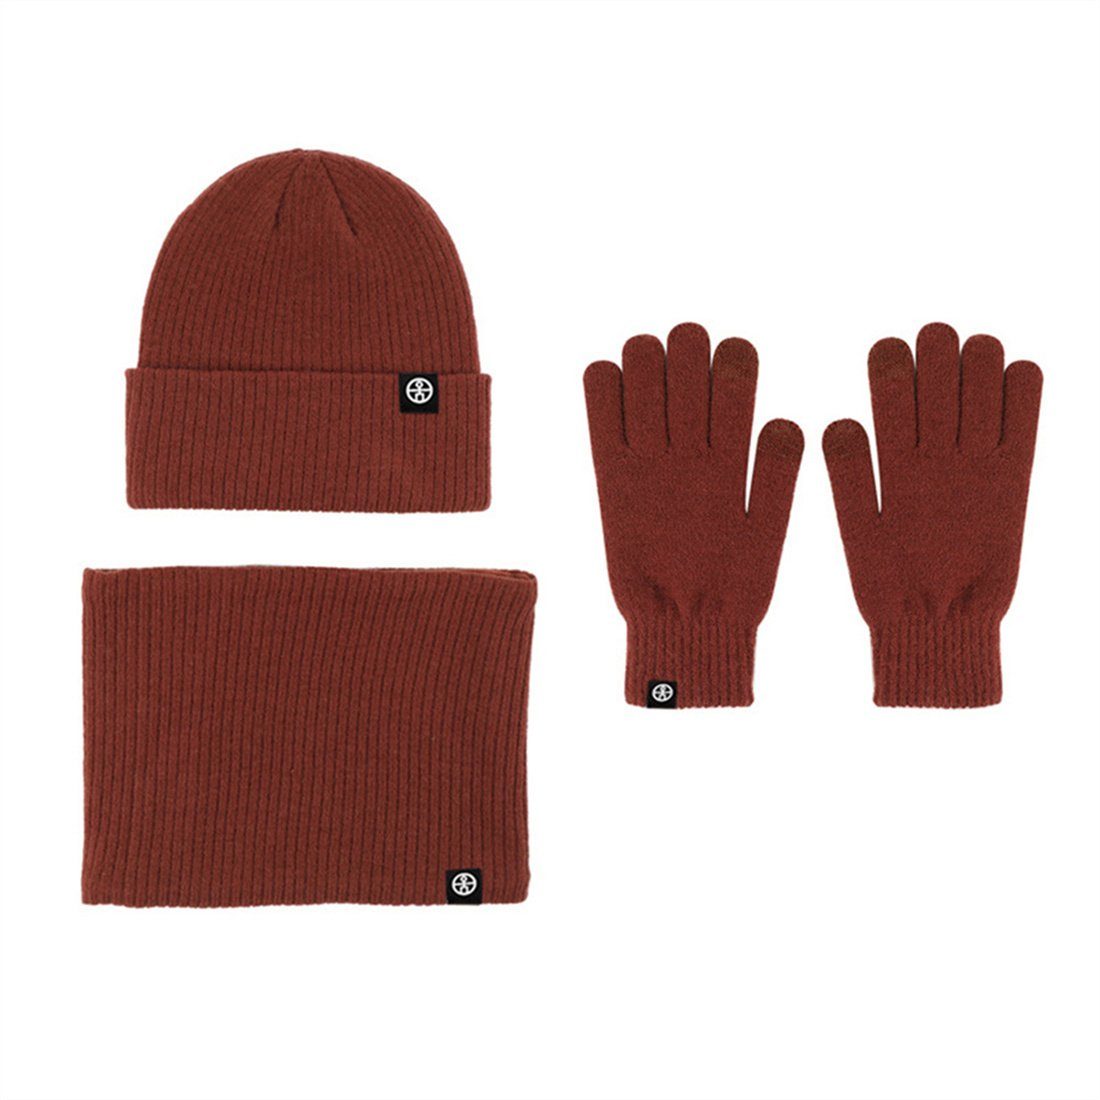 DÖRÖY Strickmütze Unisex Winter Warmth 3 Piece Set, Strickmütze + Schal + Handschuhe Karamell